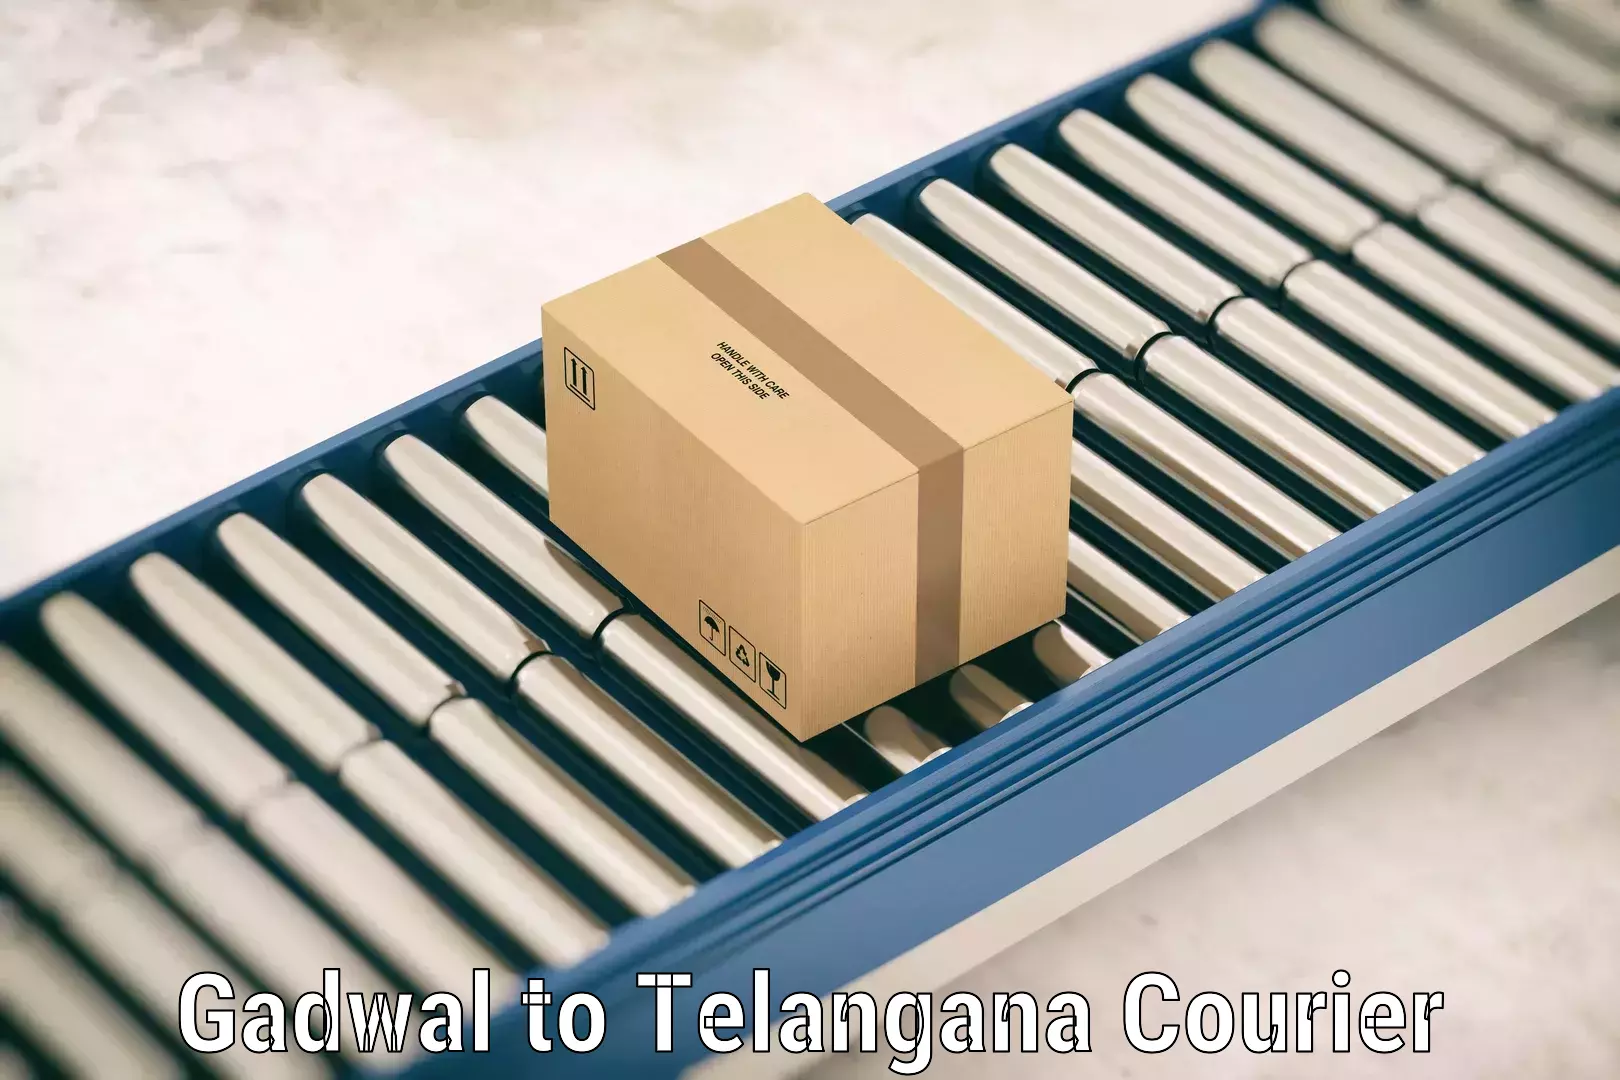 Luggage shipping planner Gadwal to Tiryani